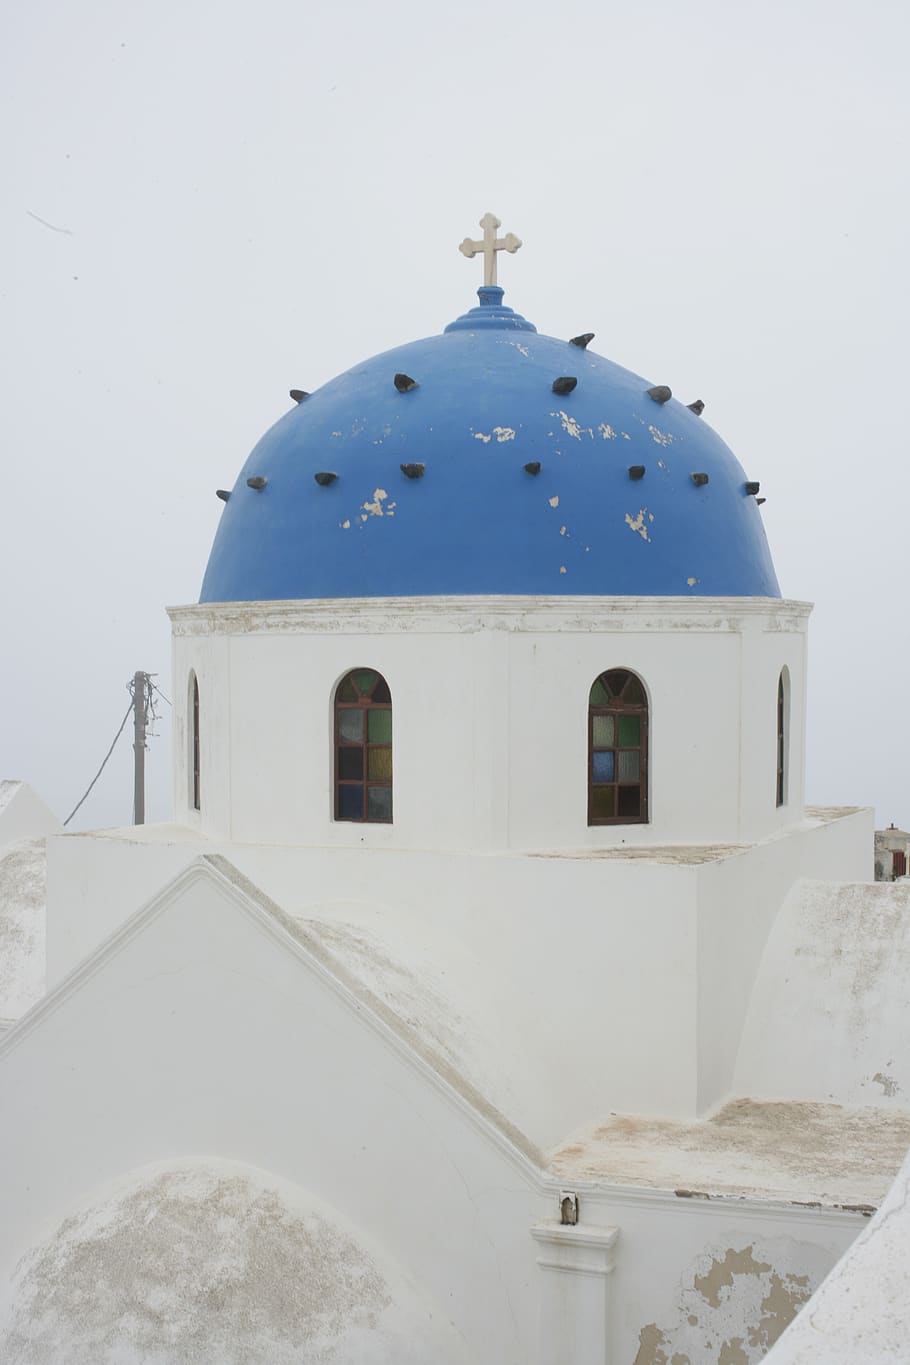 grecia, azul, viaje, oia, santorini, iglesia, cícladas, mediterráneo, estructura construida, religión